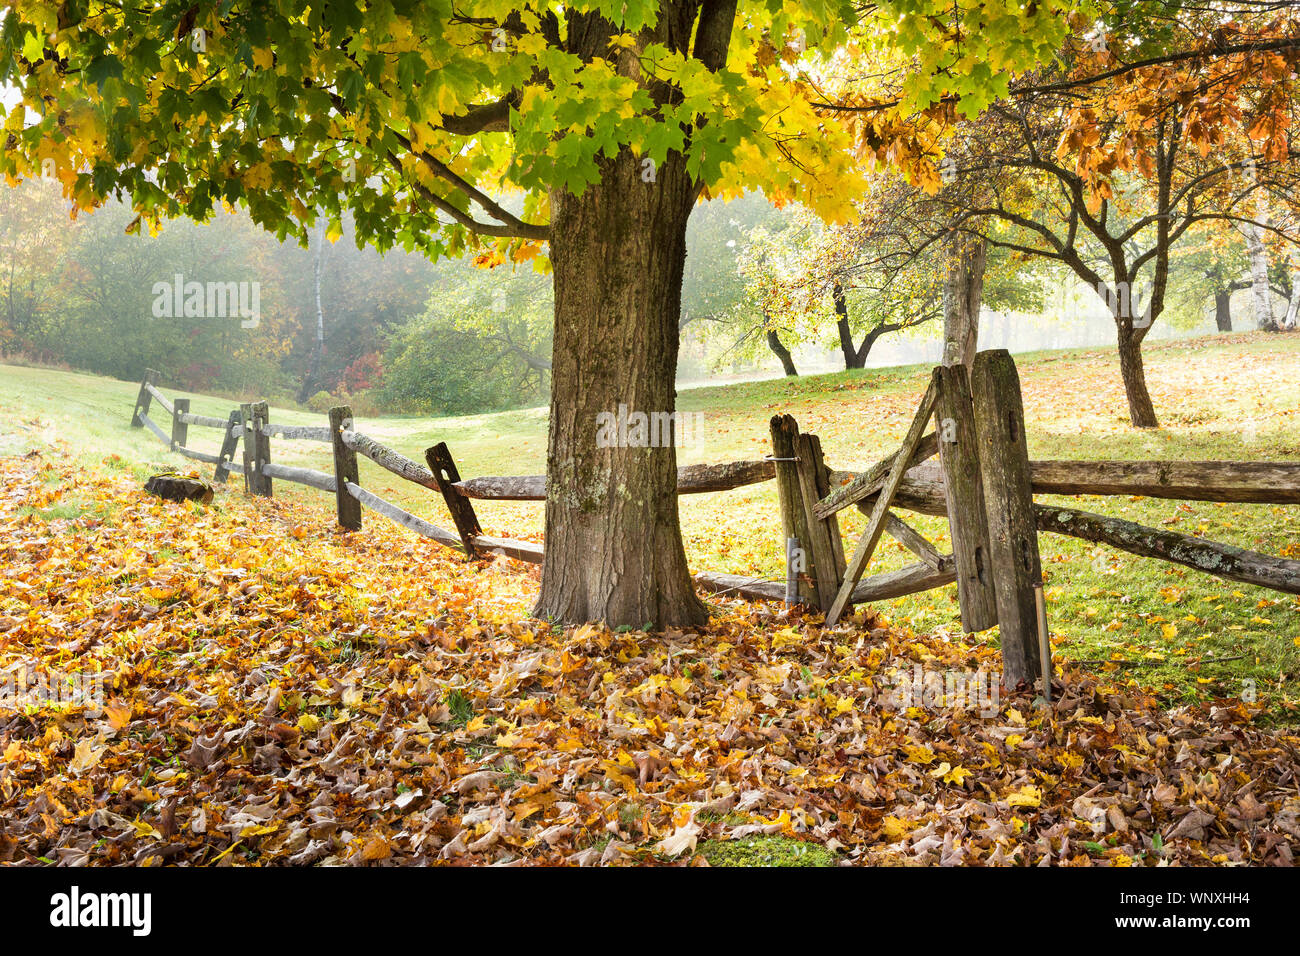 Abfallzeit in New England. Fahren Landstraßen bringt sie letzten Herbst saisonal Szenen mit bunten Bäumen und alten Zaun Linien. Leaf peeping Vermont Stockfoto